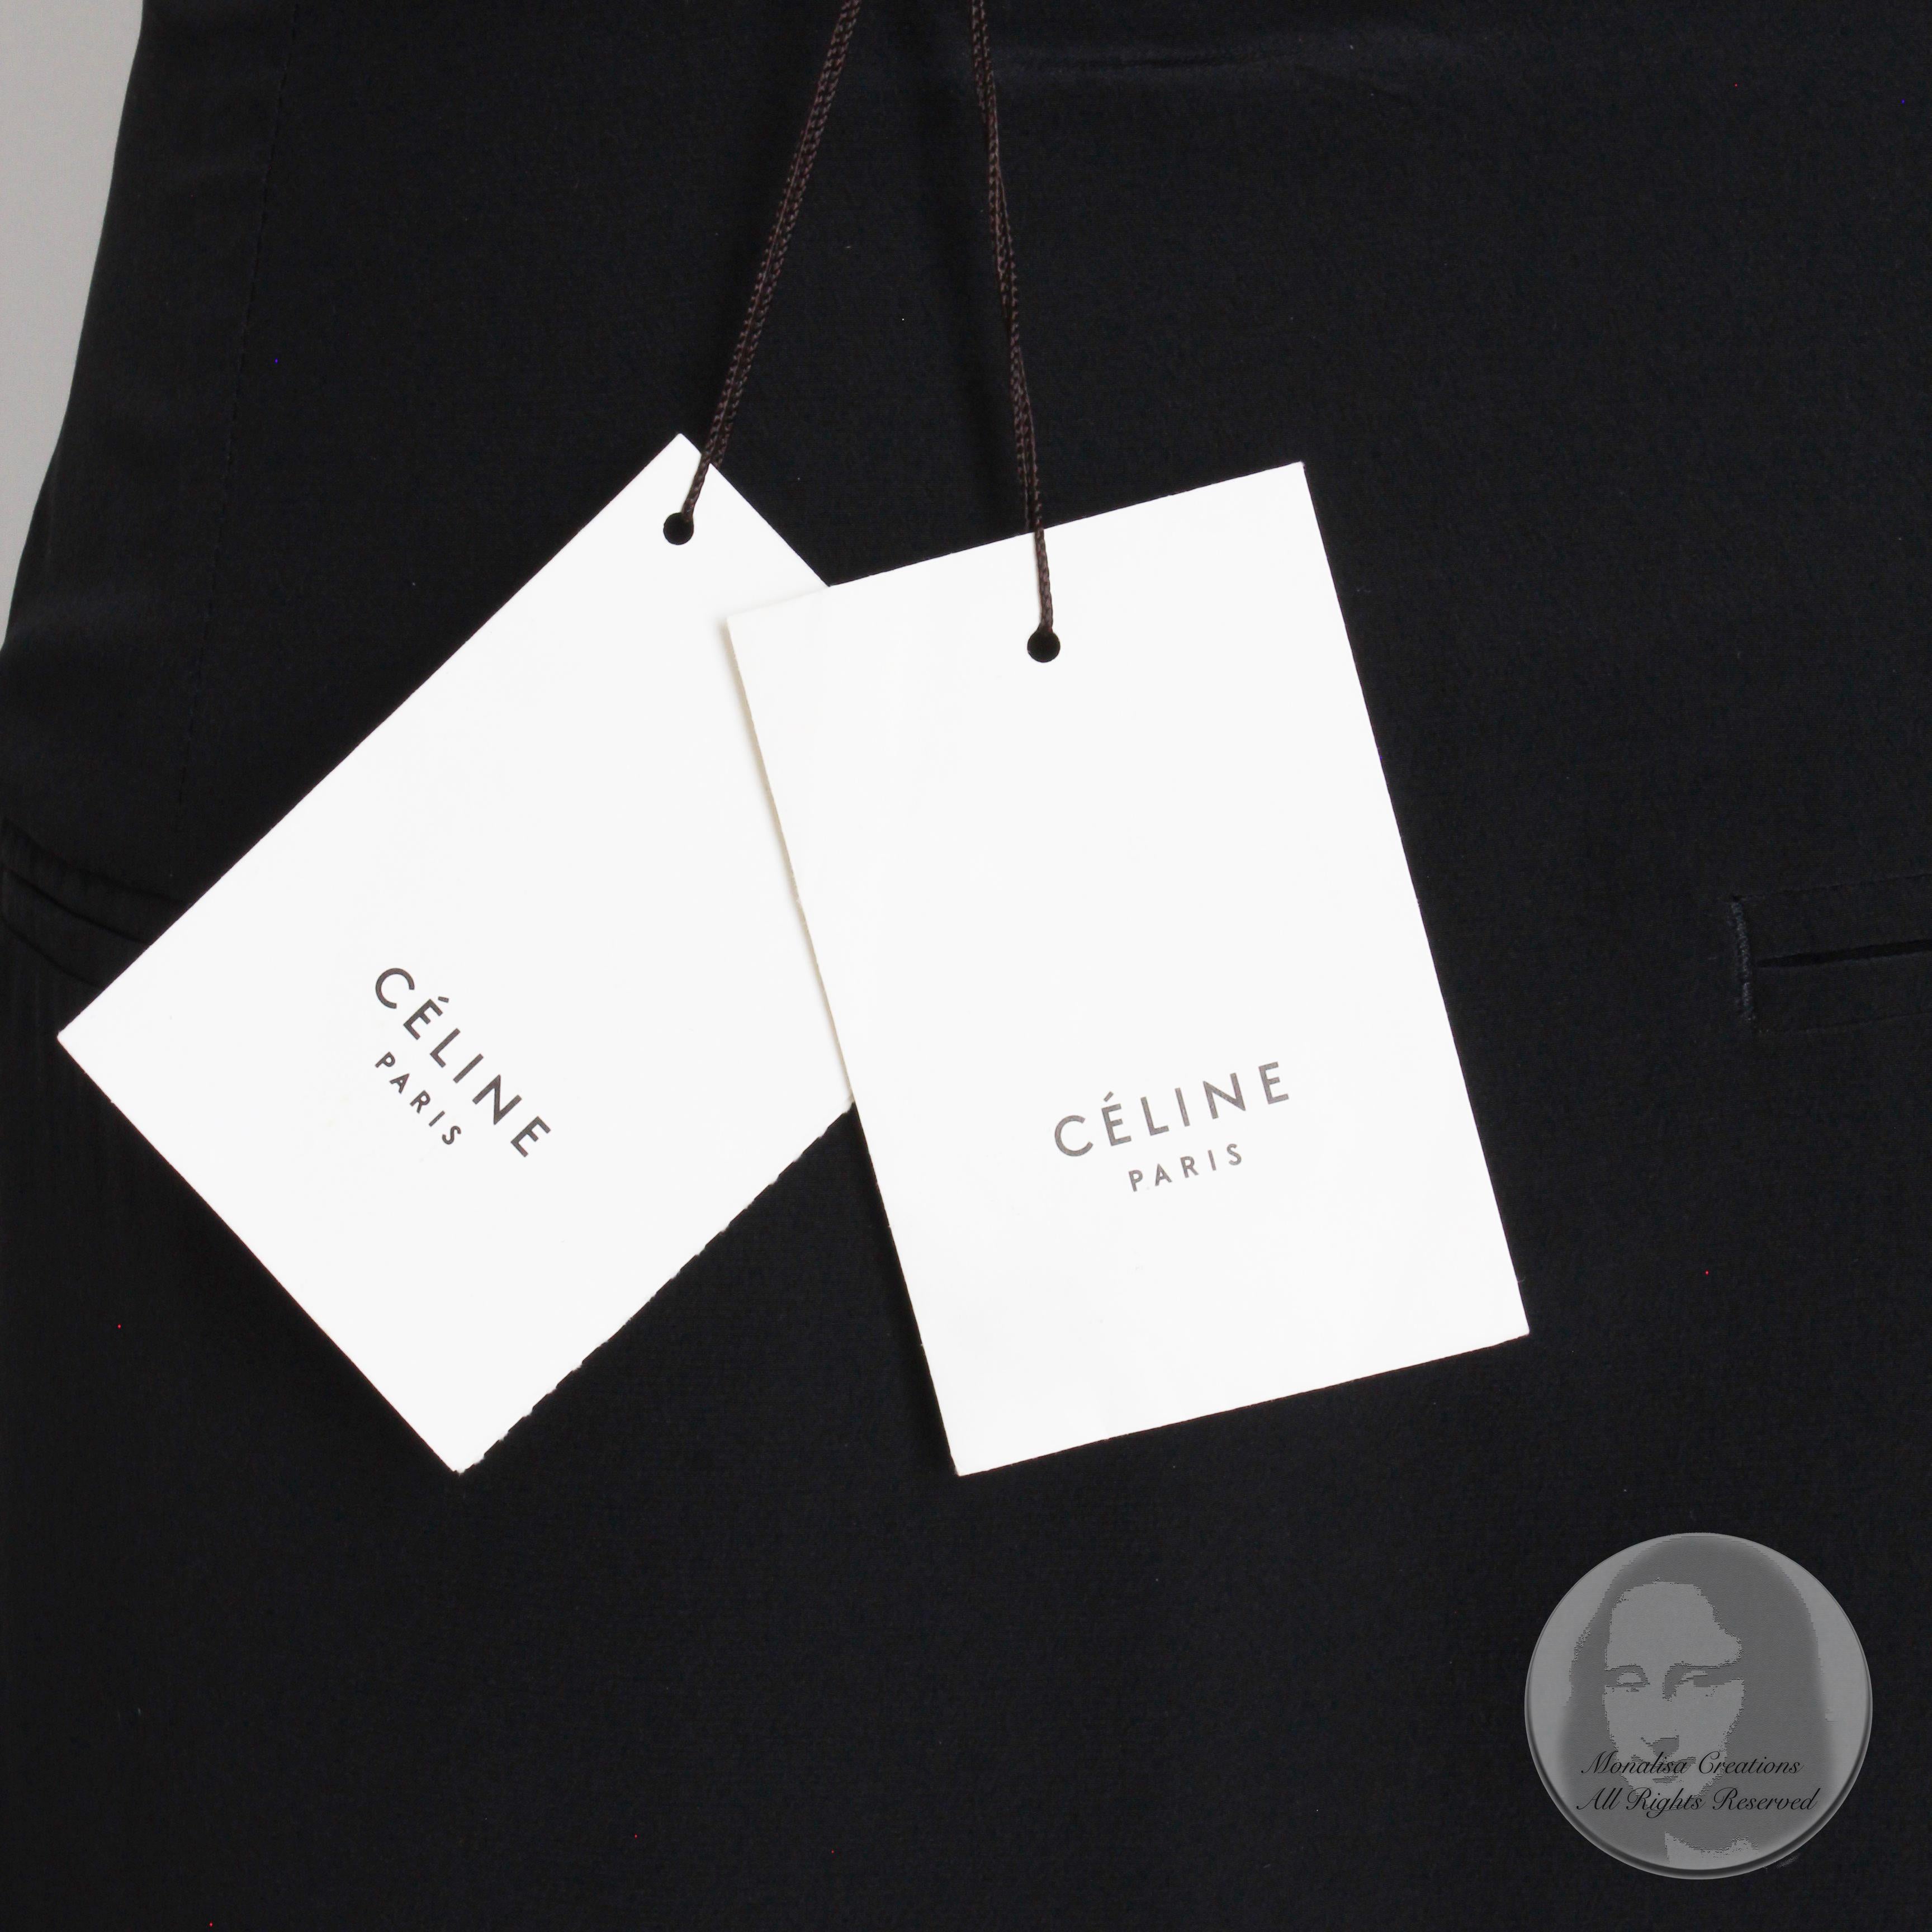 Celine Paris Silk Skirt Button Front Patch Pocket Phoebe Philo Black NWT Size 38 For Sale 3